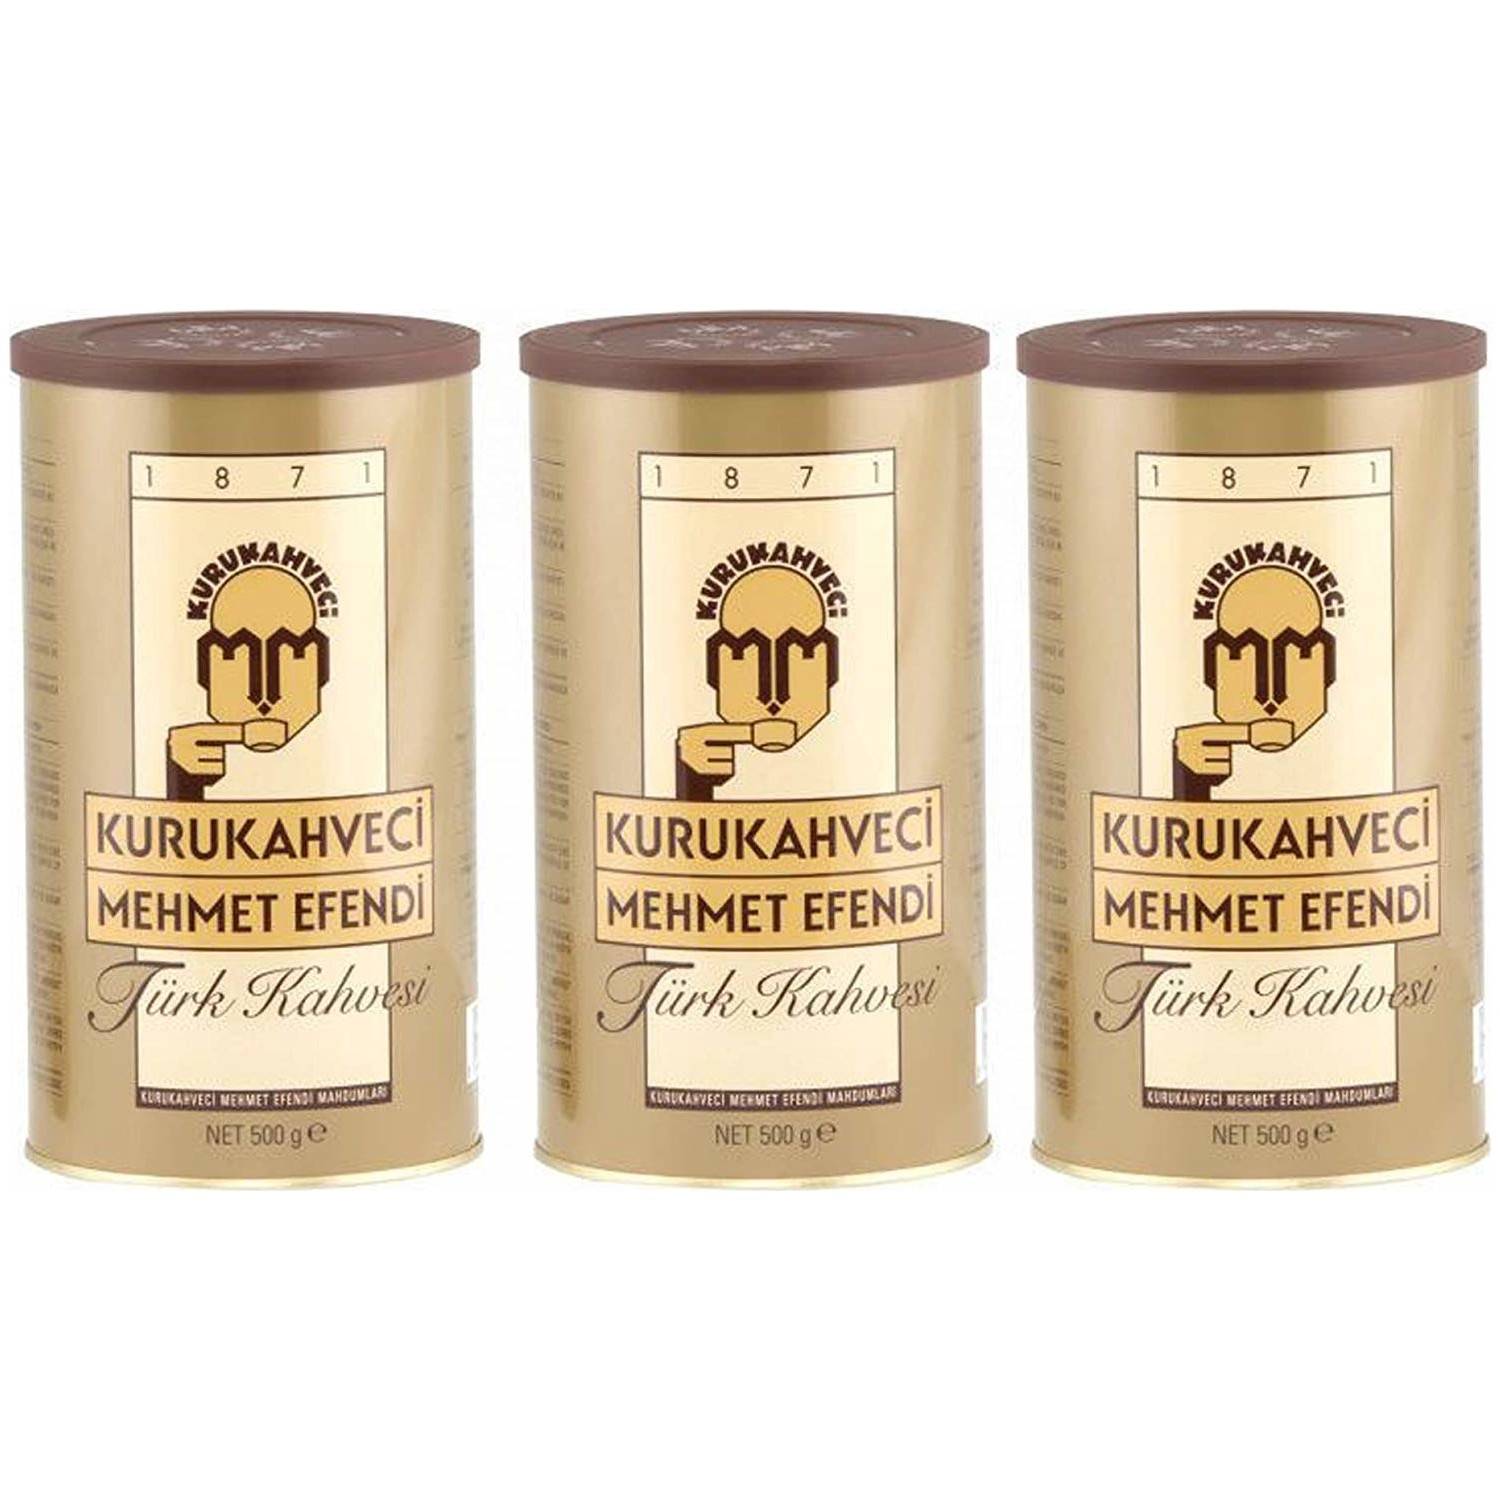 Турецкий кофе mehmet efendi (мехмет эфенди) - бренд, ассортимент, отзывы и цены